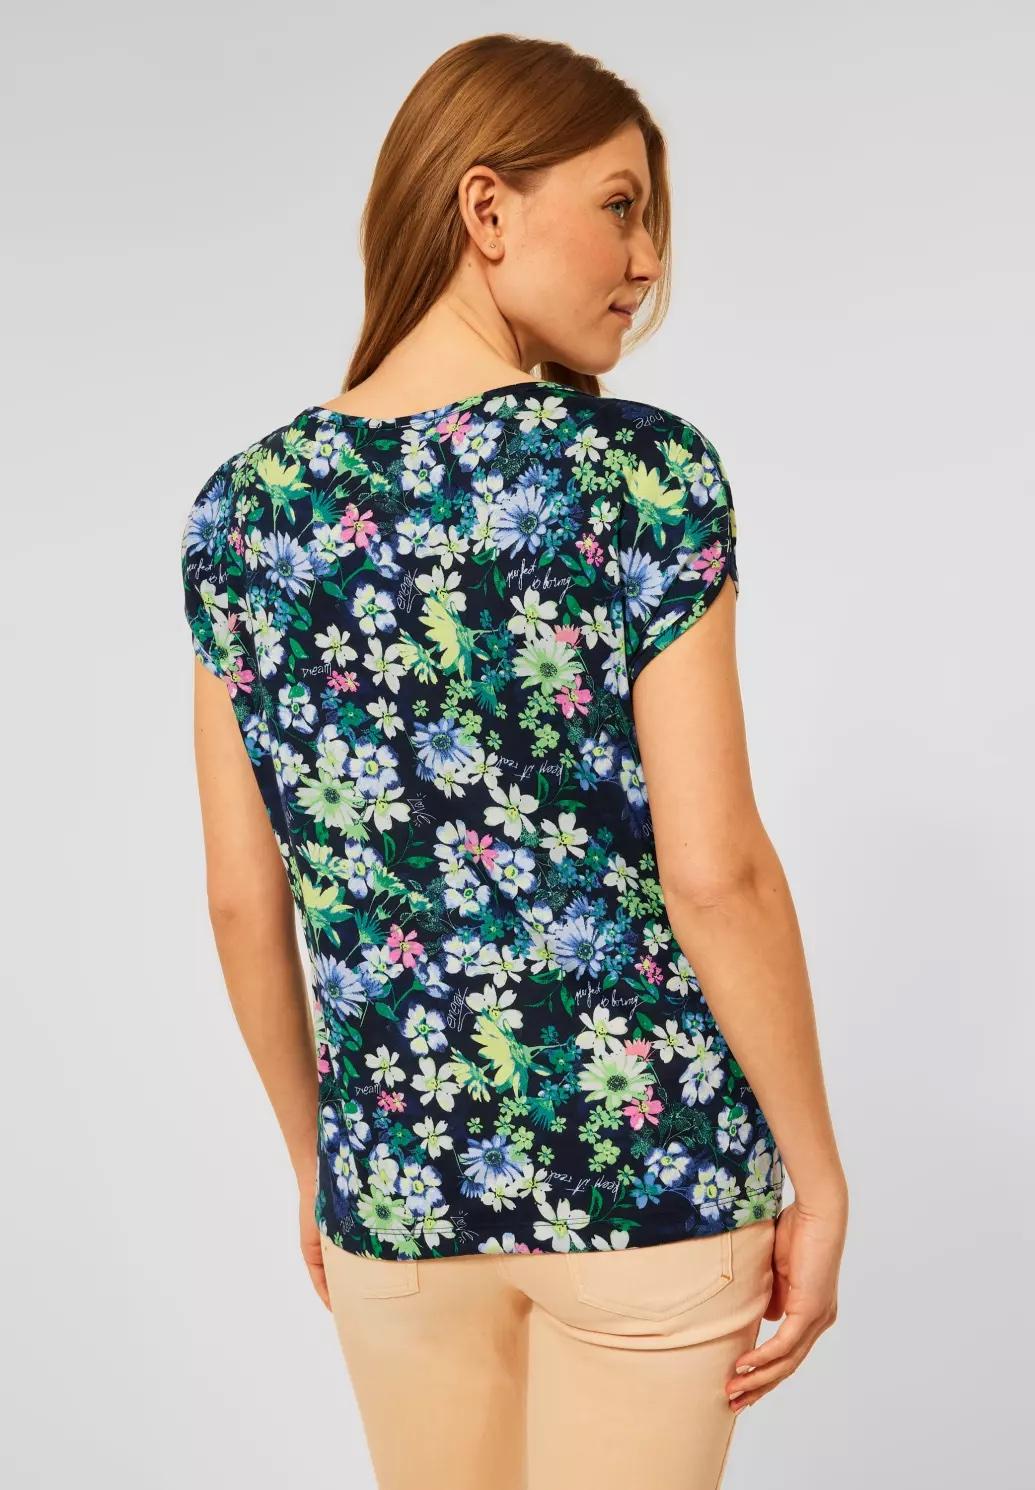 CECIL tričko s kvetinovou potlačou, mod